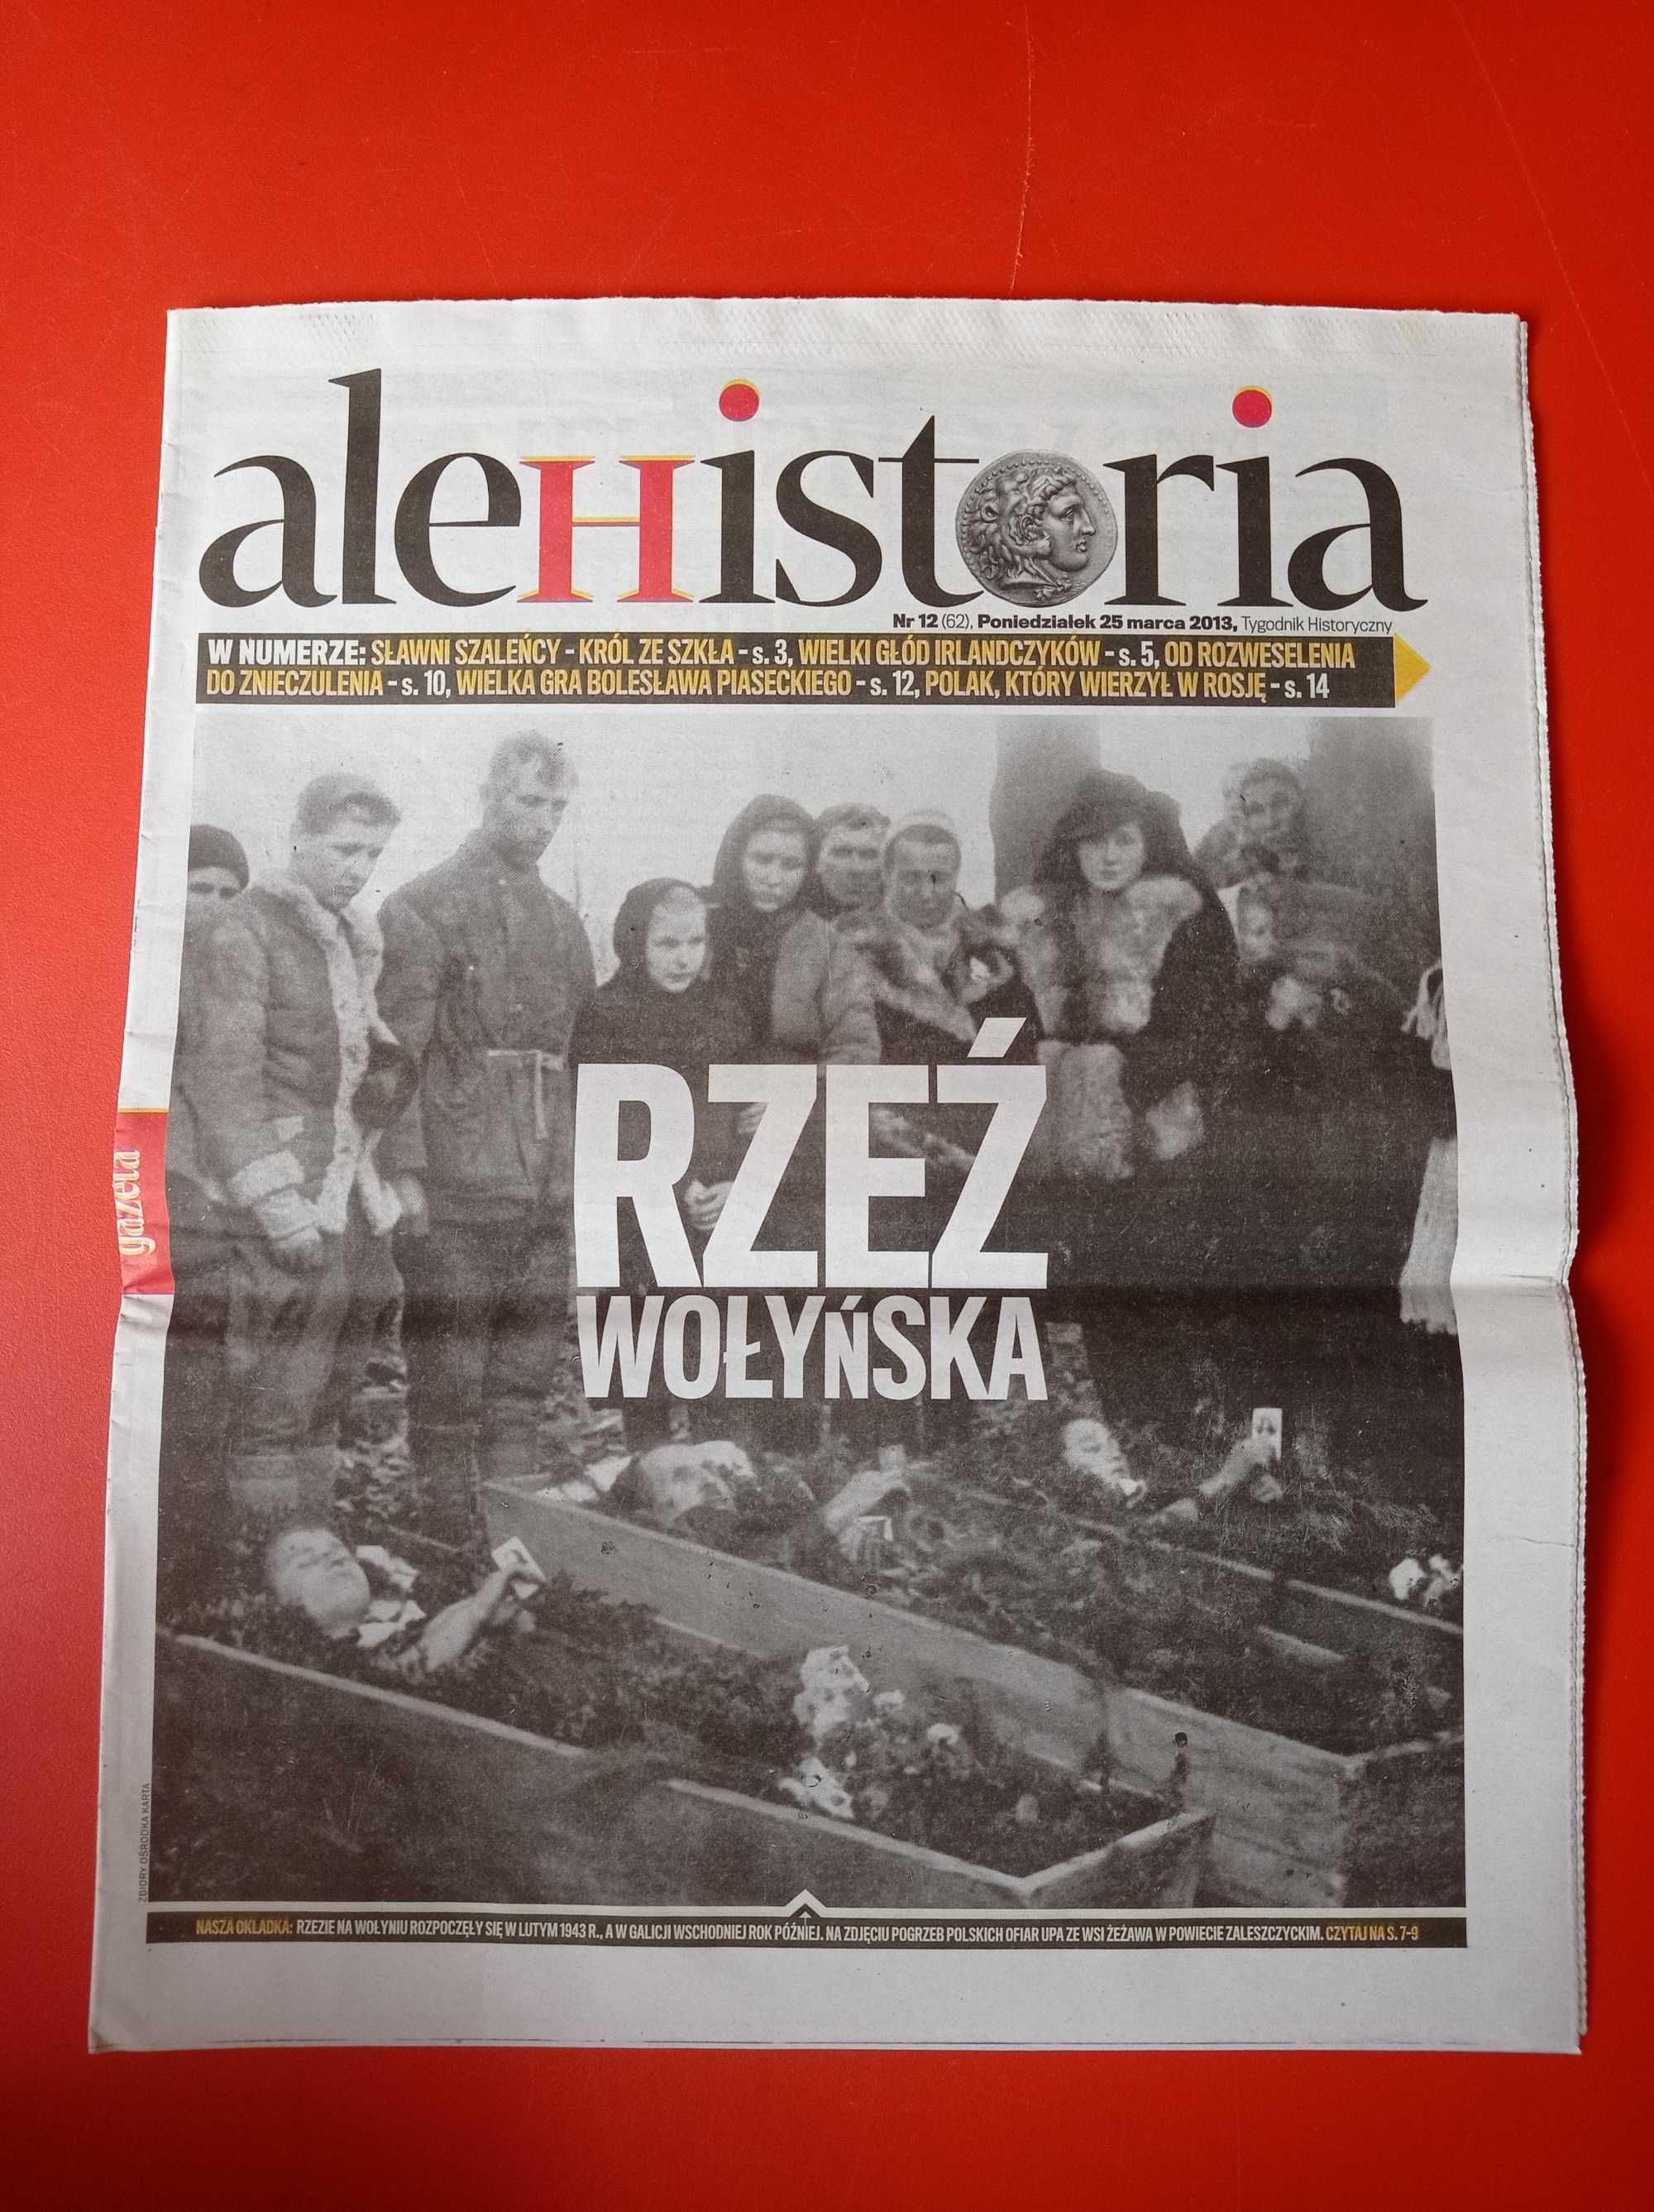 Gazeta Wyborcza ale Historia, nr 12, 25 marca 2013